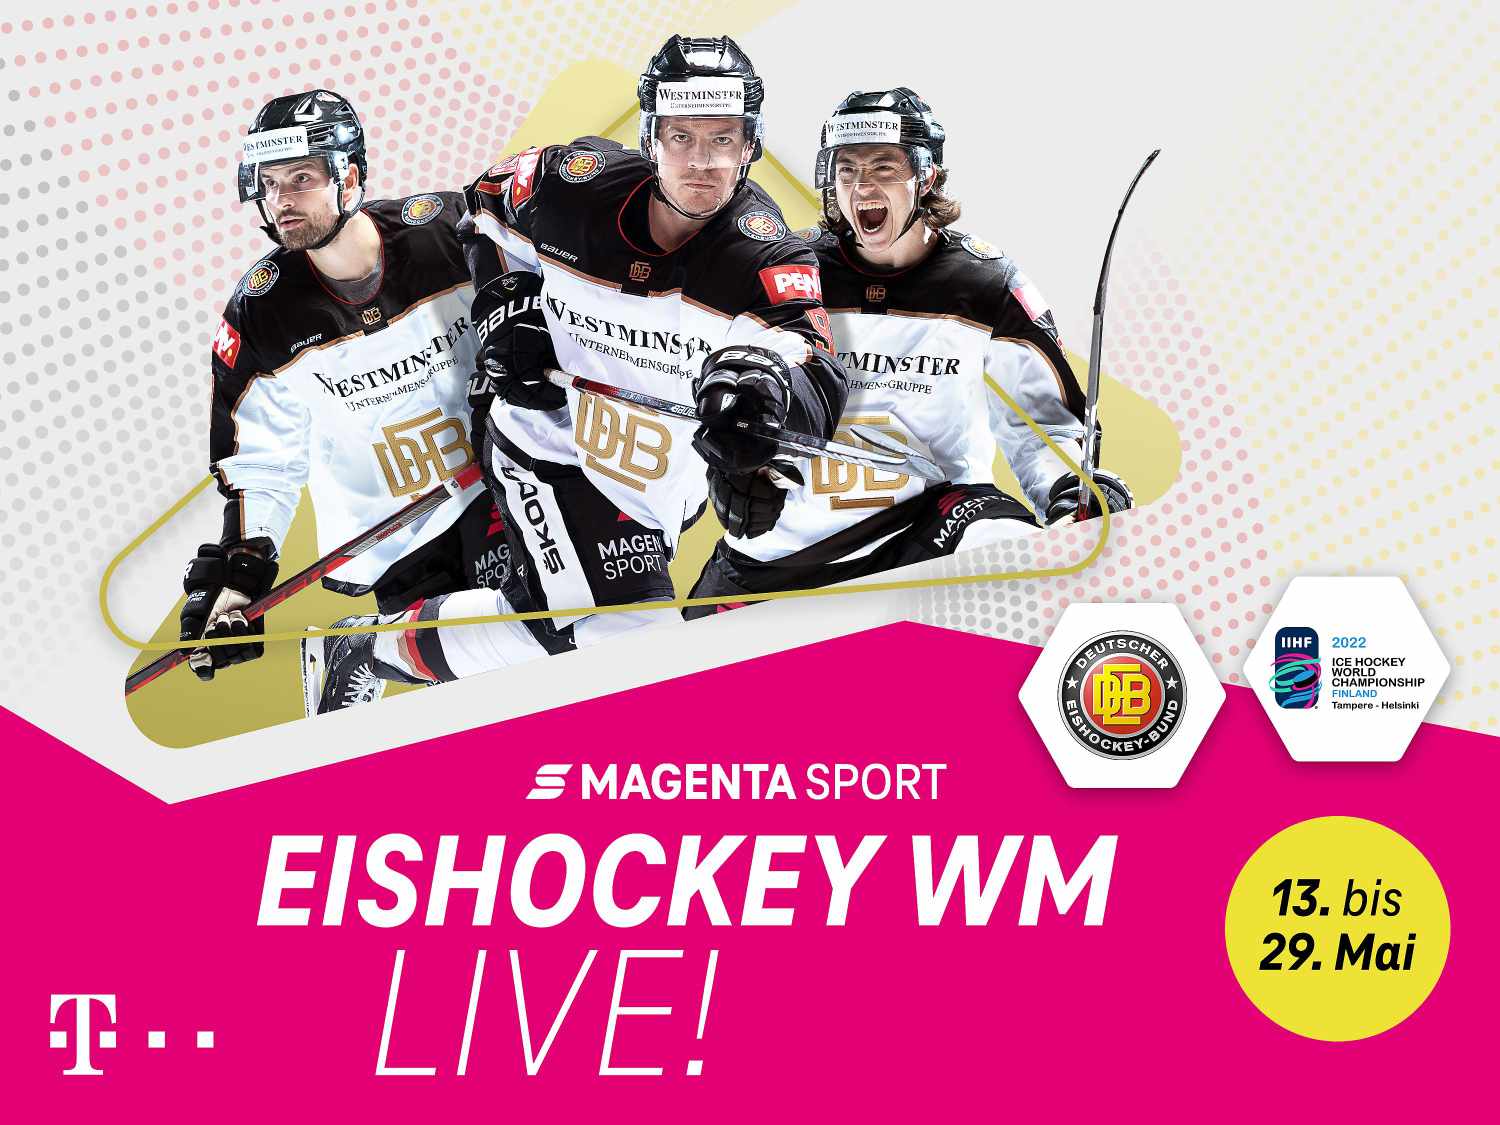 Telekom zeigt alle deutschen Spiele der Eishockey WM bei MagentaTV and MagentaSport